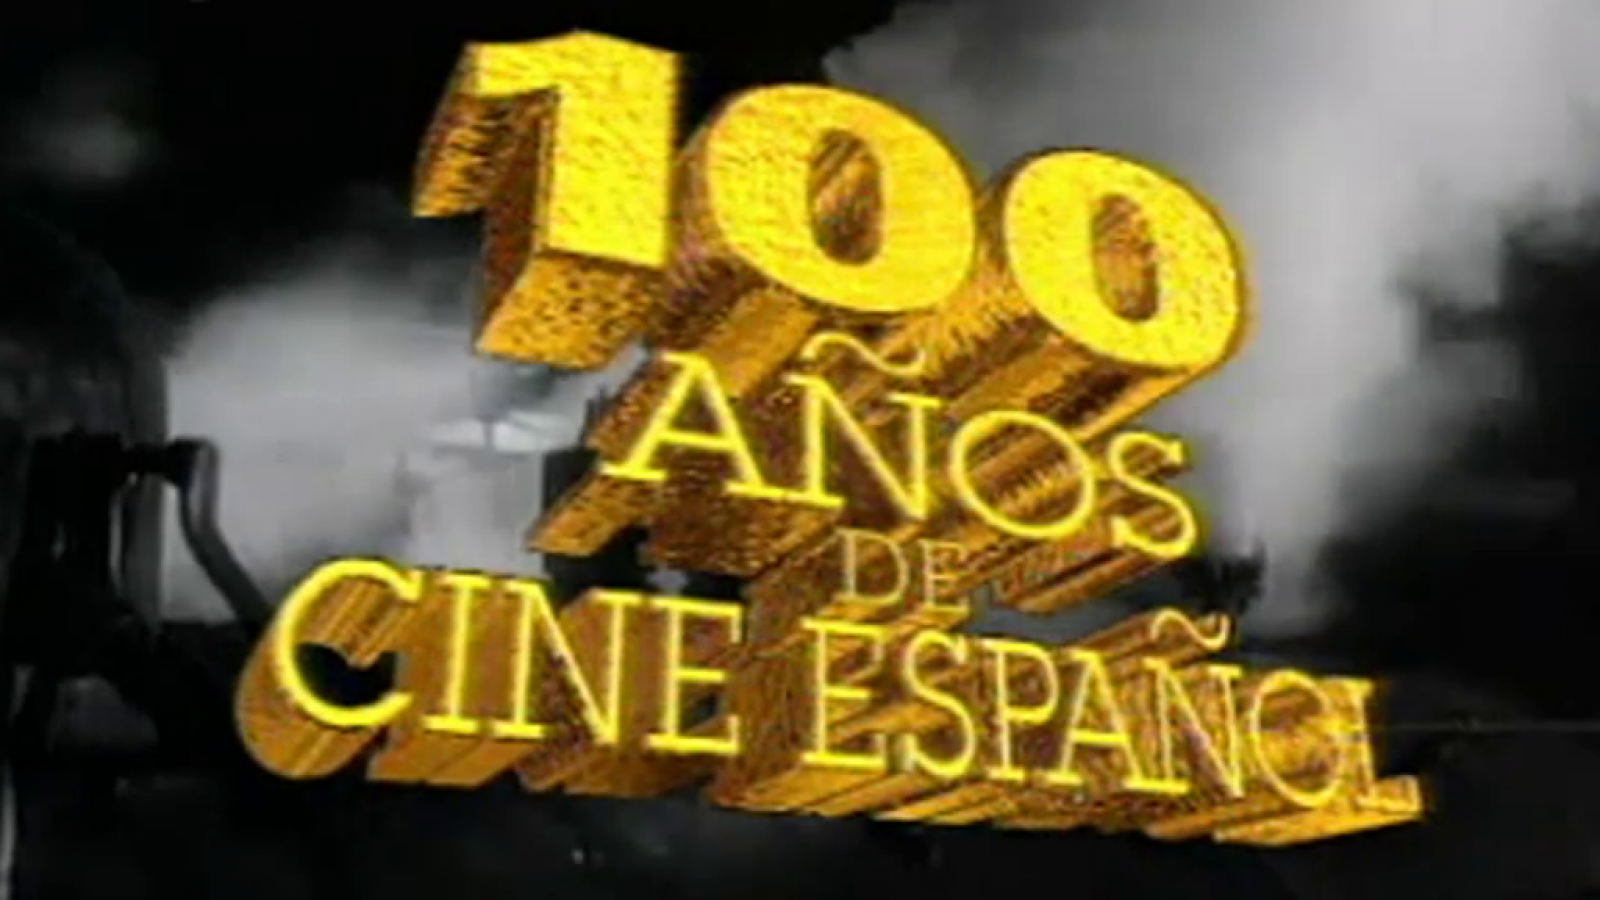 Cien años de cine español (1896-1996)